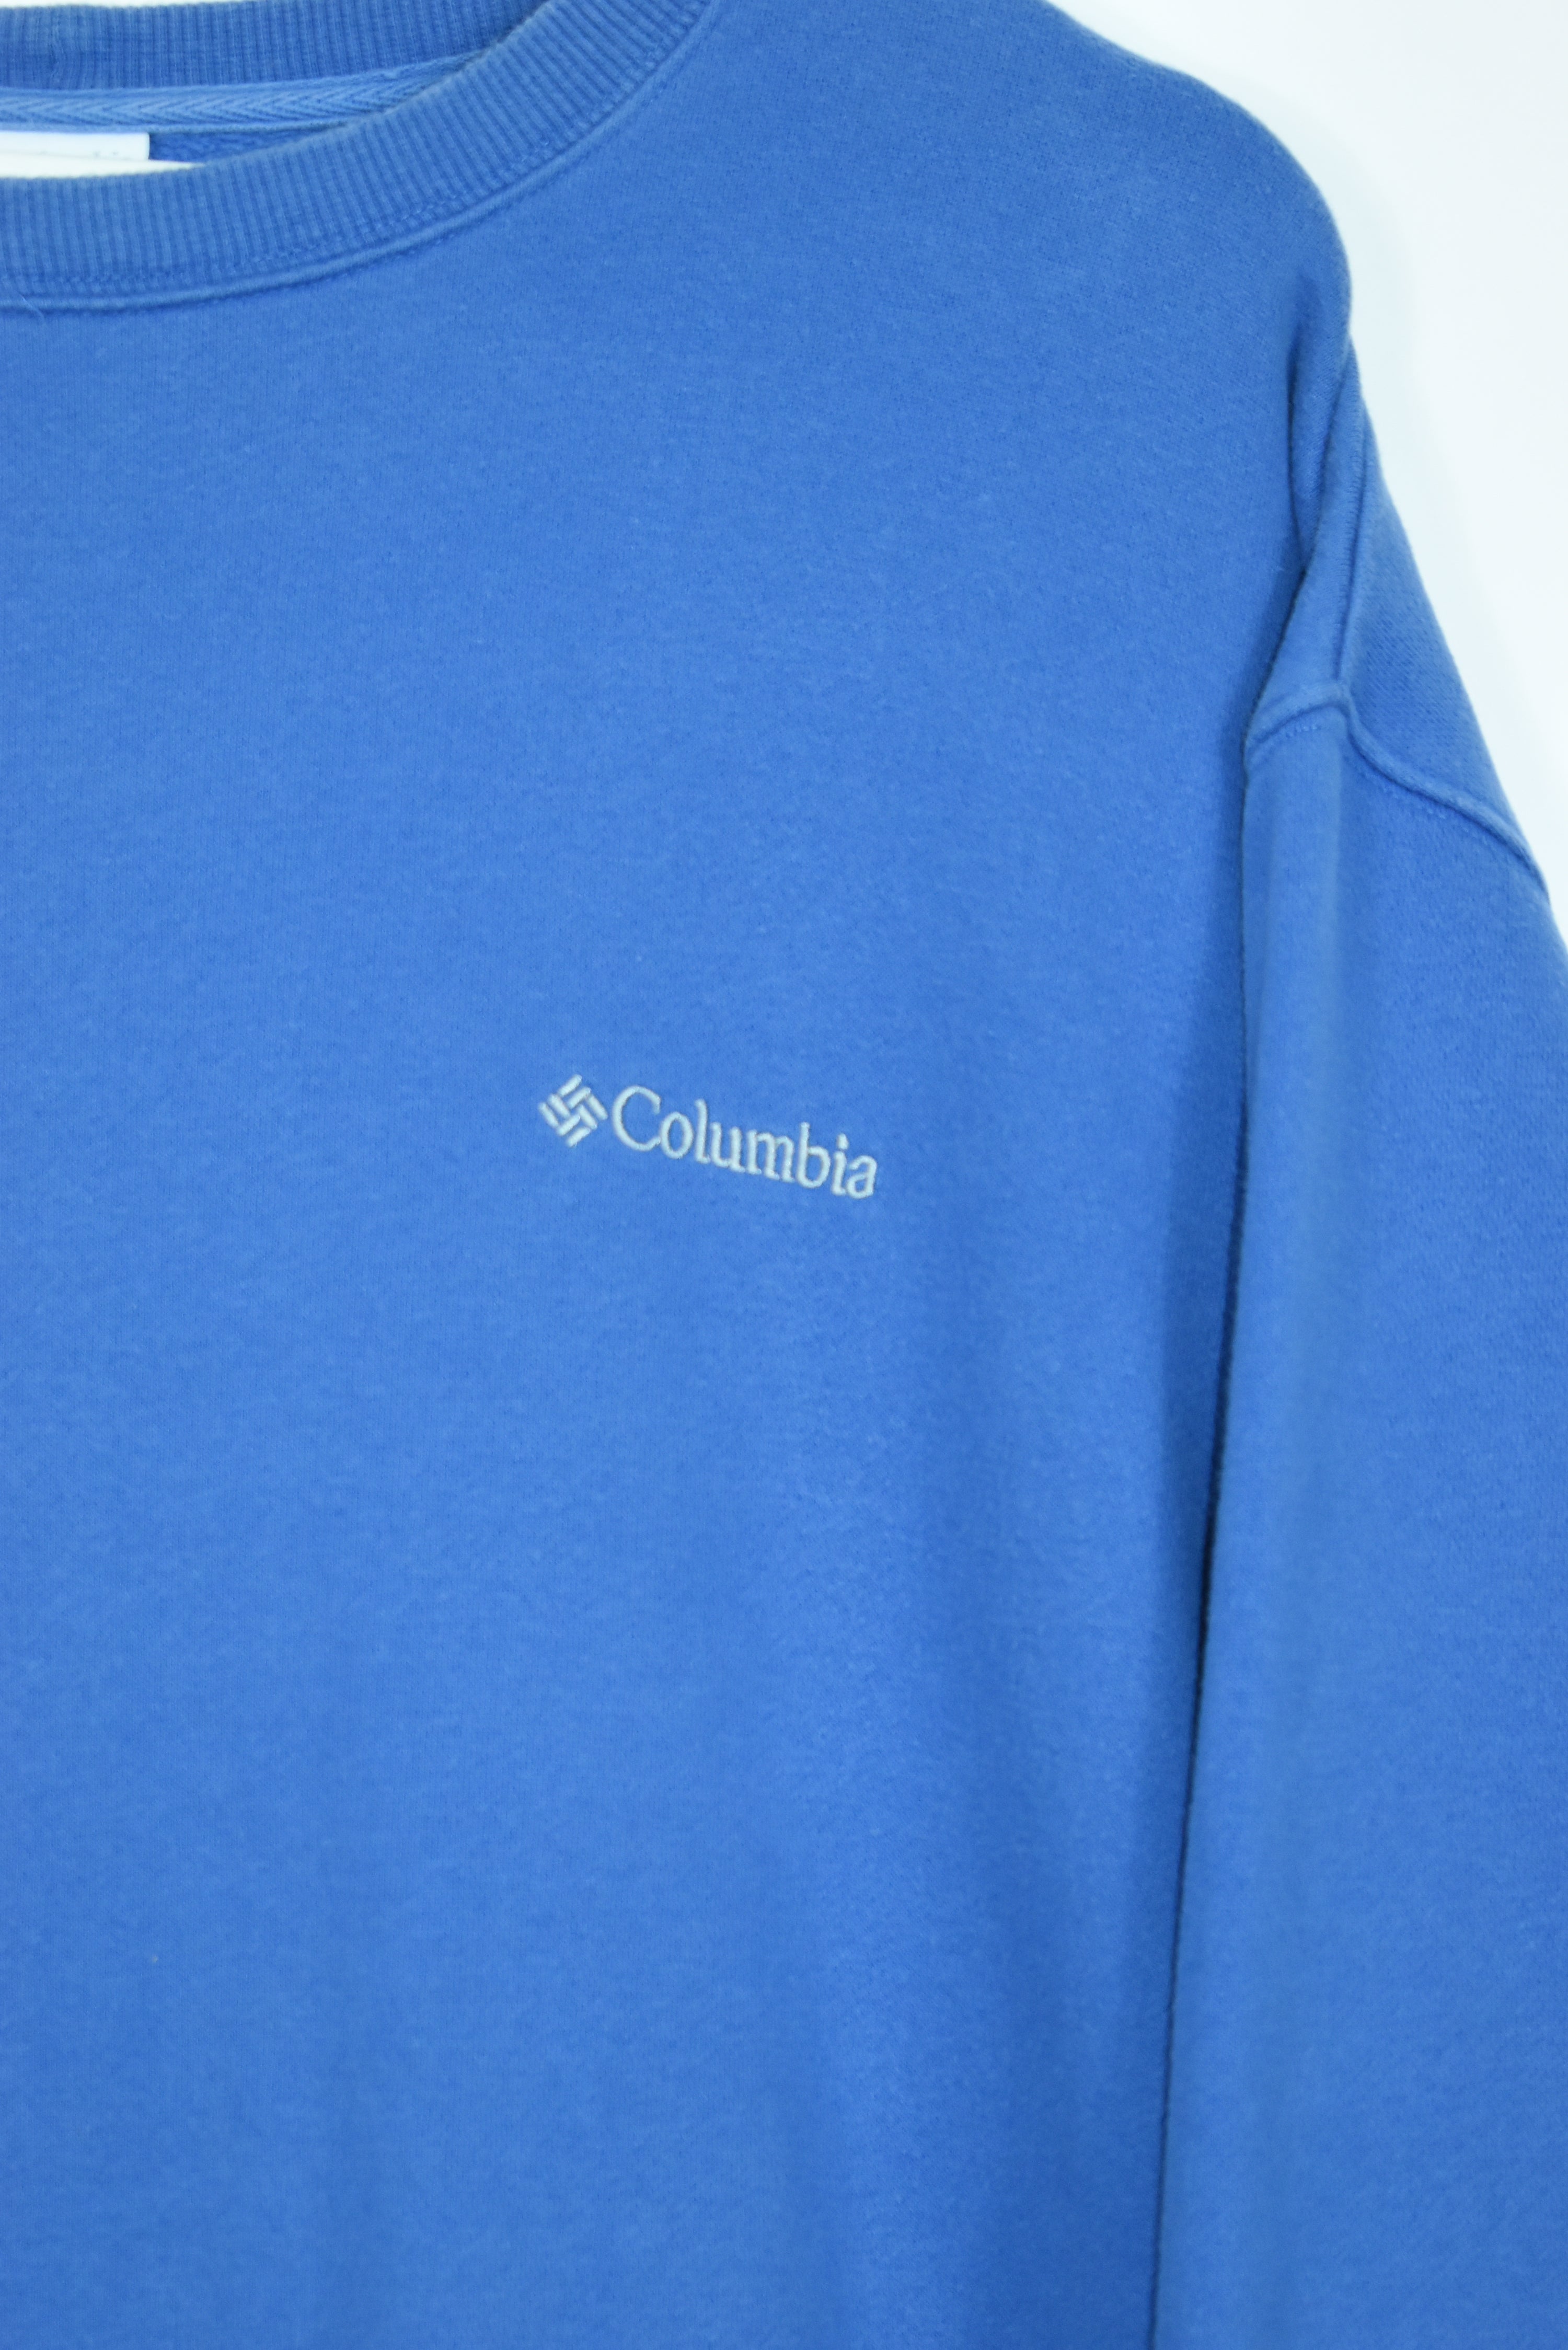 Vintage Columbia Embroidery Small Logo Sweatshirt Xlarge